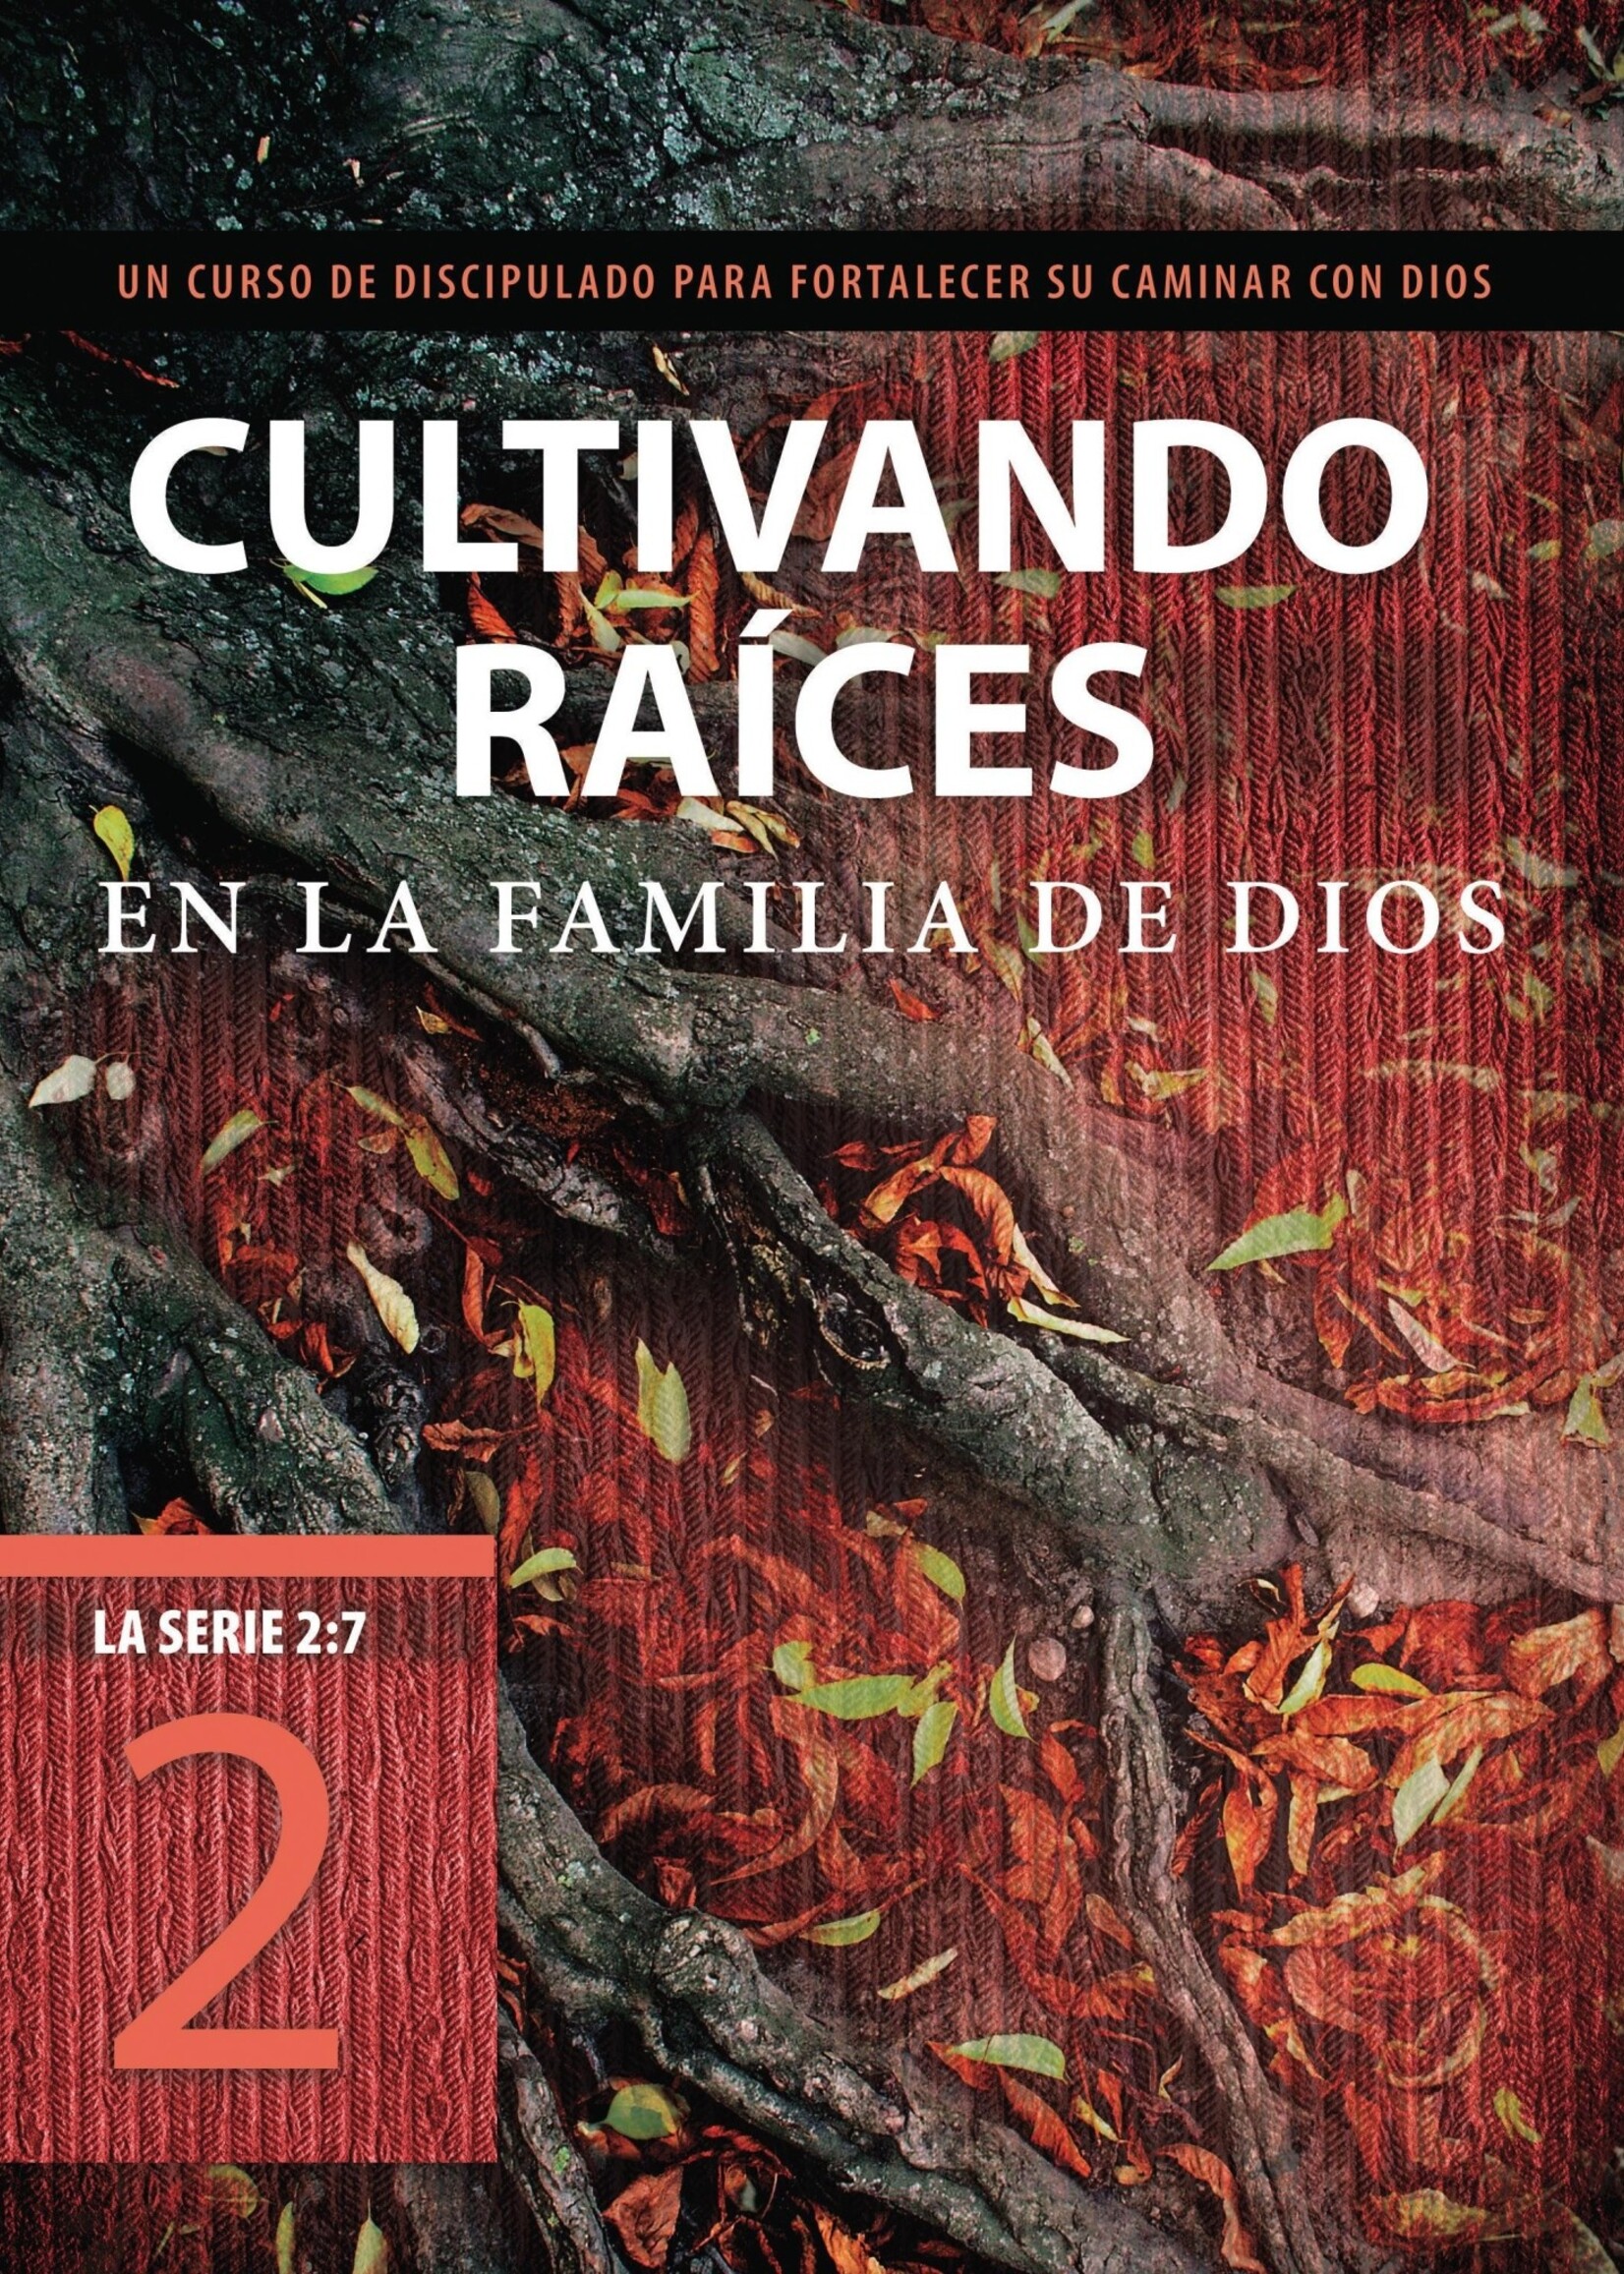 TYNDALE ESPANOL CULTIVANDO RAICES EN LA FAMILIA DE DIOS: UN CURSO DE DISCIPULADO PARA FORTALECER SU CAMINAR CON DIOS